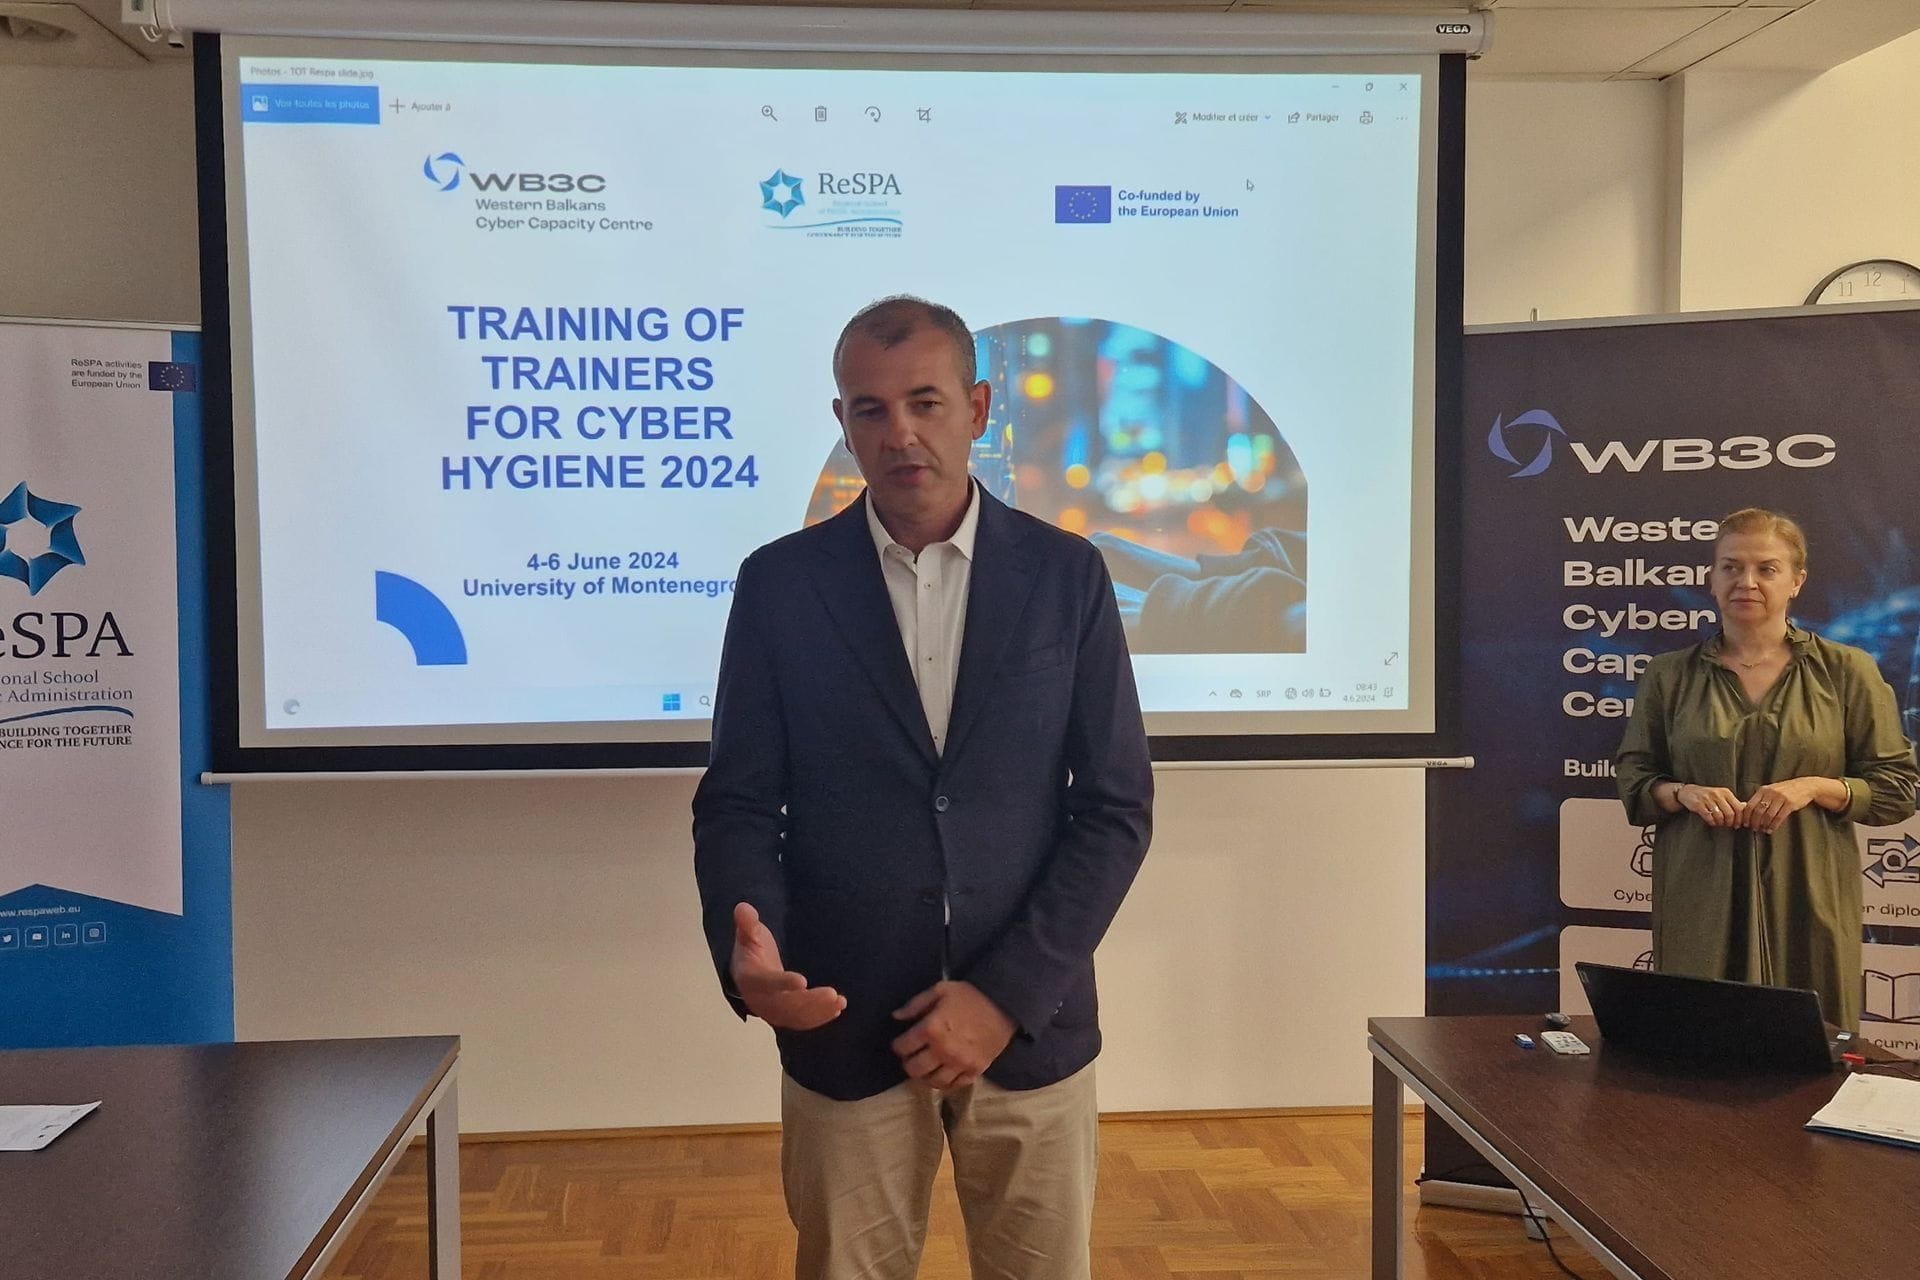 ReSPA i Centar za razvoj sajber kapaciteta Zapadnog Balkana trodnevnim treningom podižu nivo sajber sigurnosti javne uprave regiona